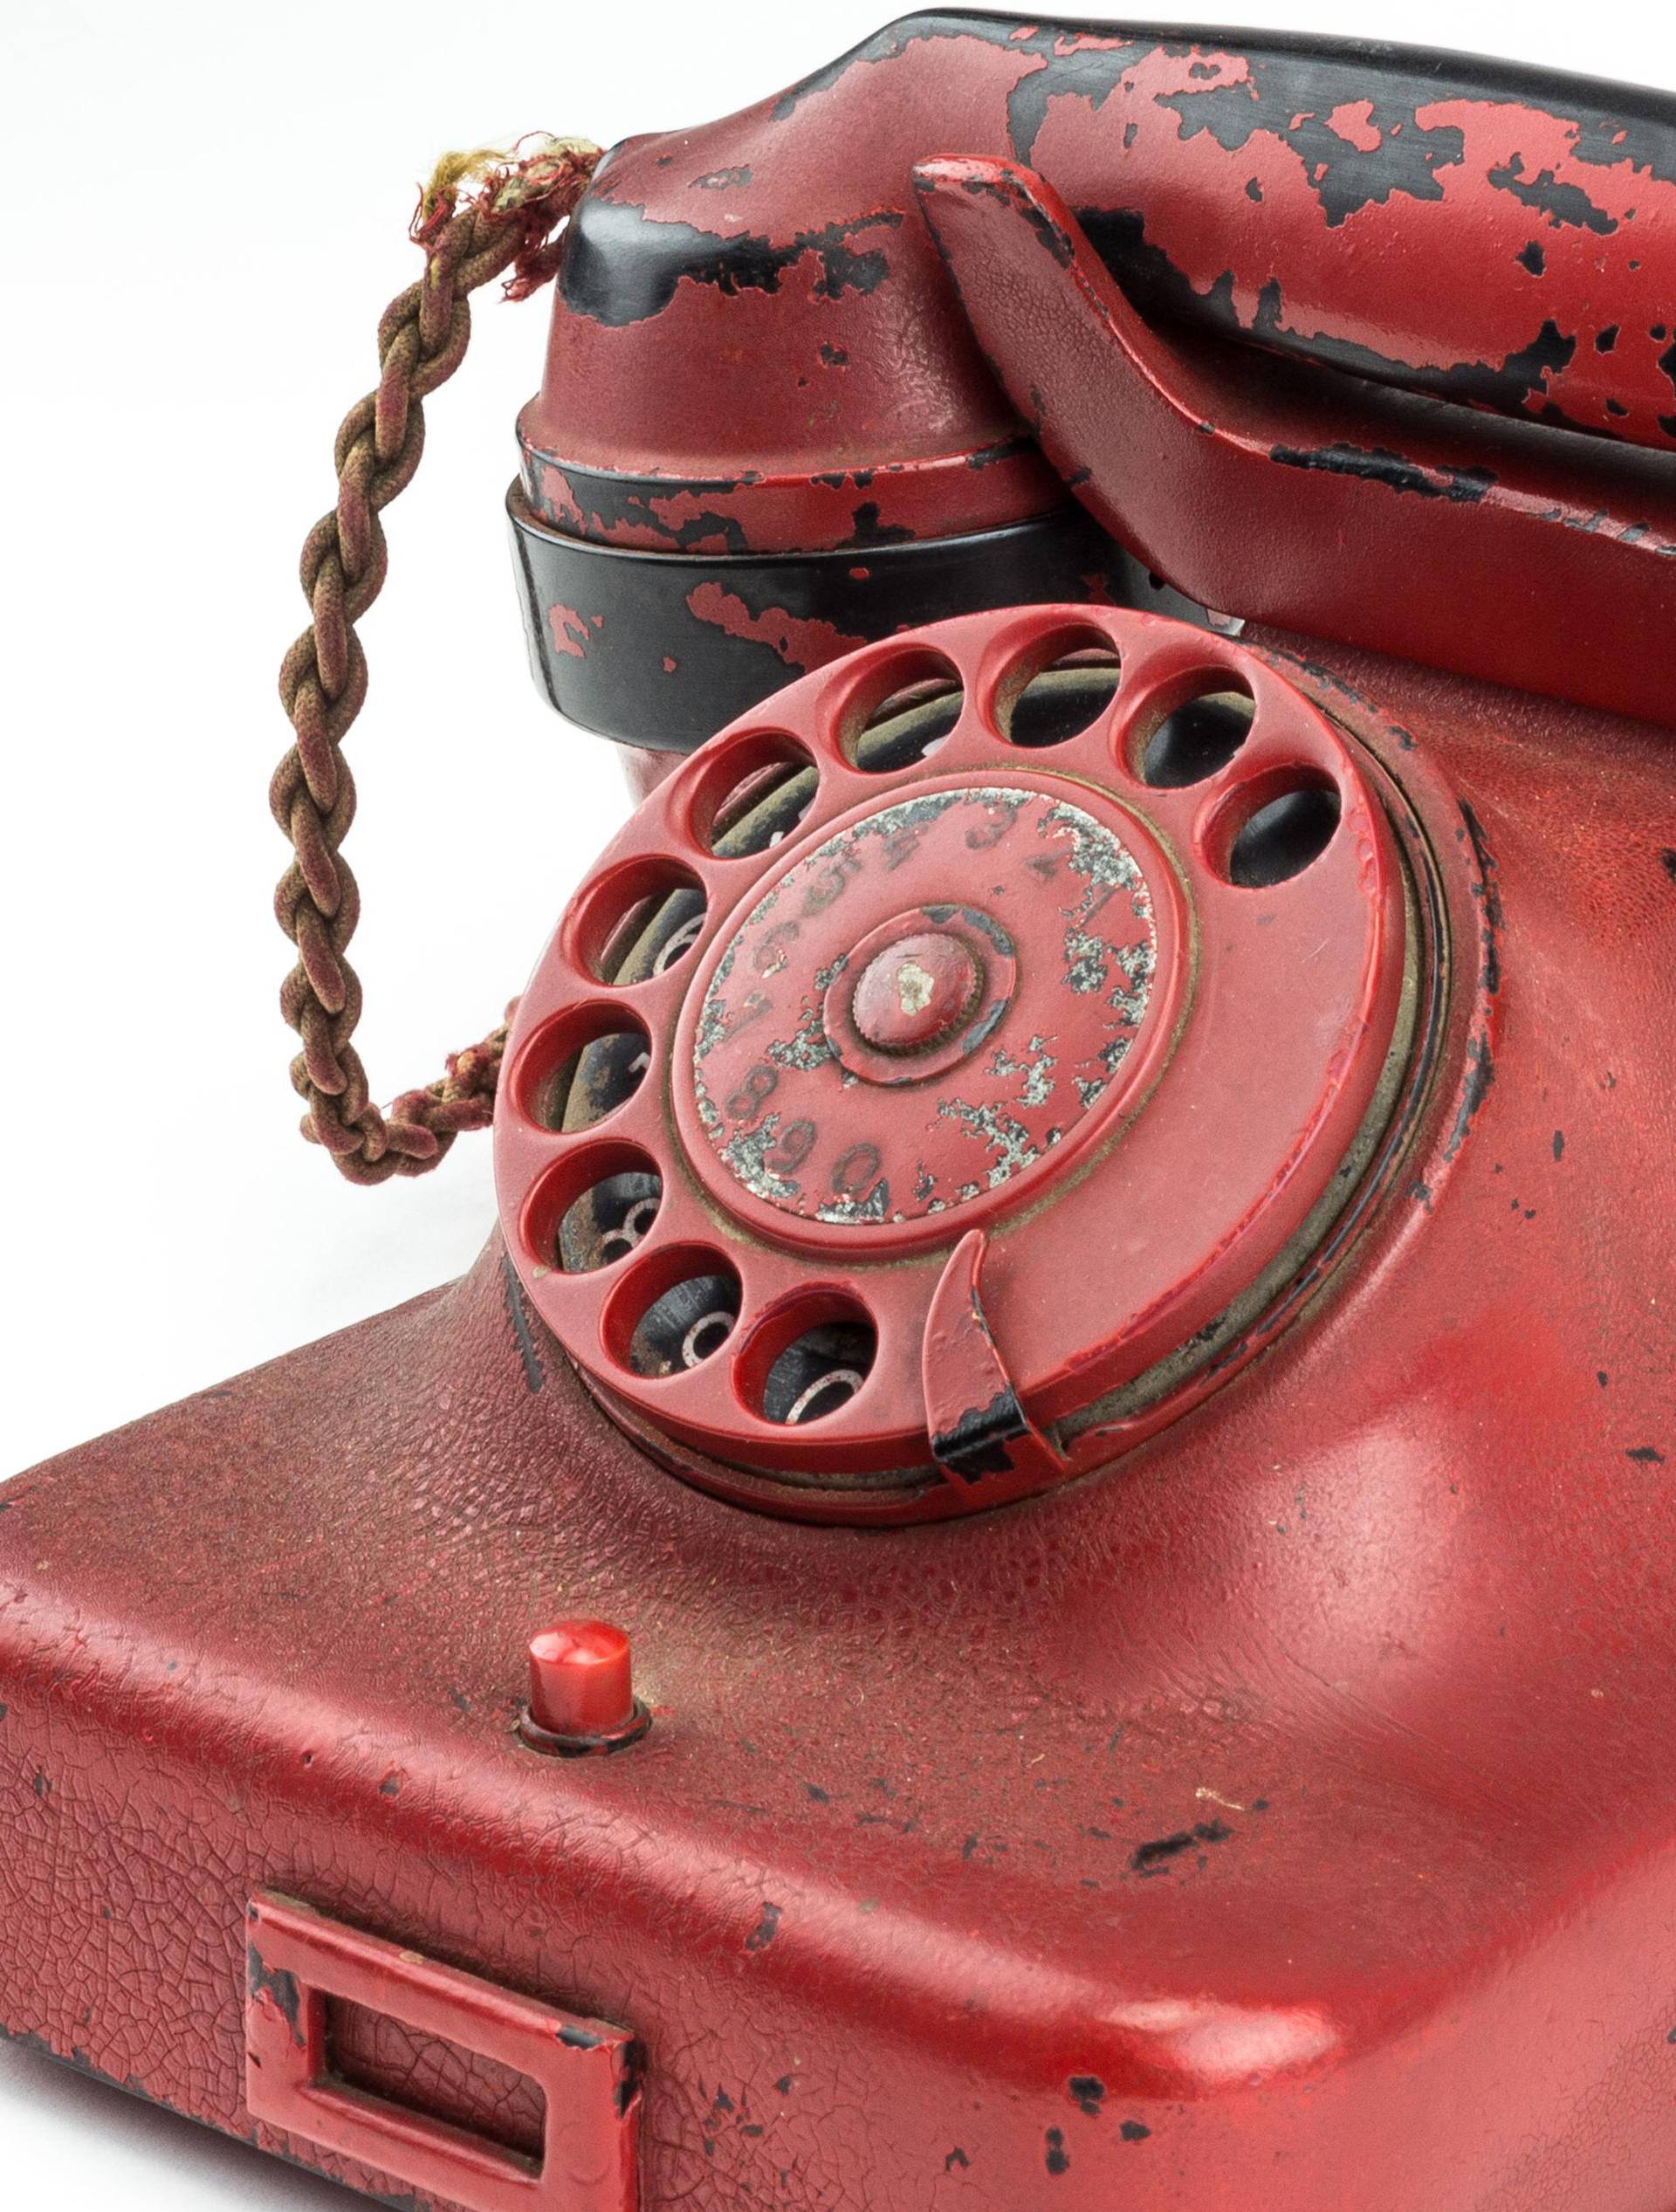 Adolf Hitler's personal Berlin bunker telephone sells for $243,000 dollars